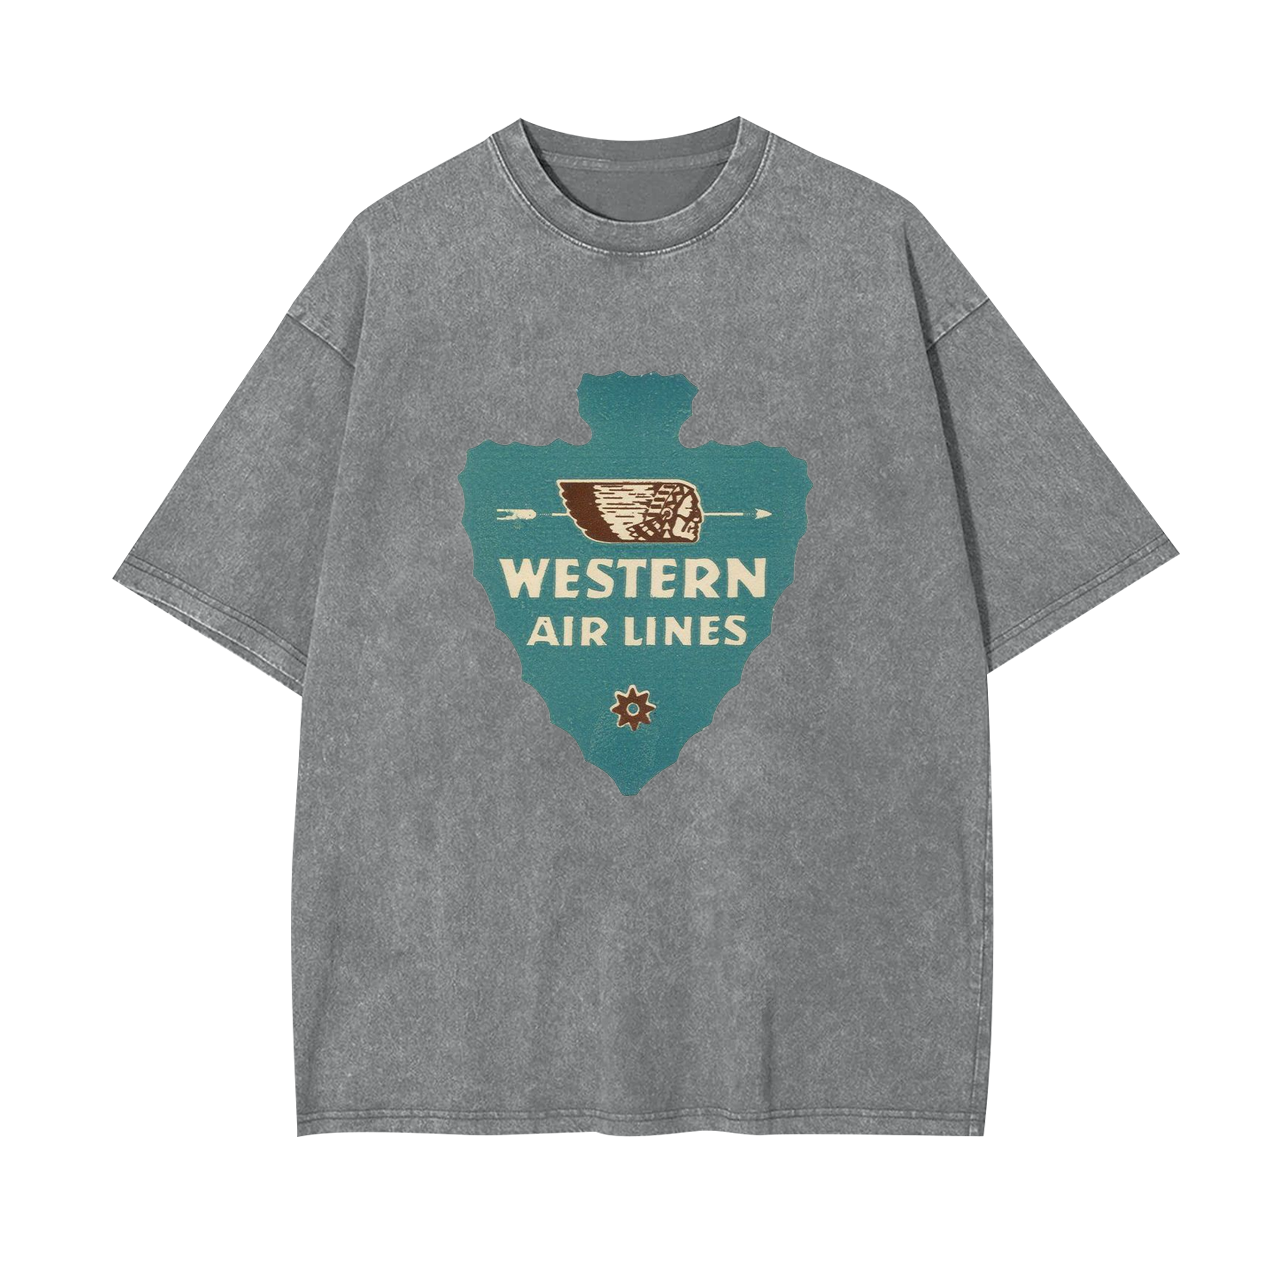 Western Air Lines Garment-dye Tees